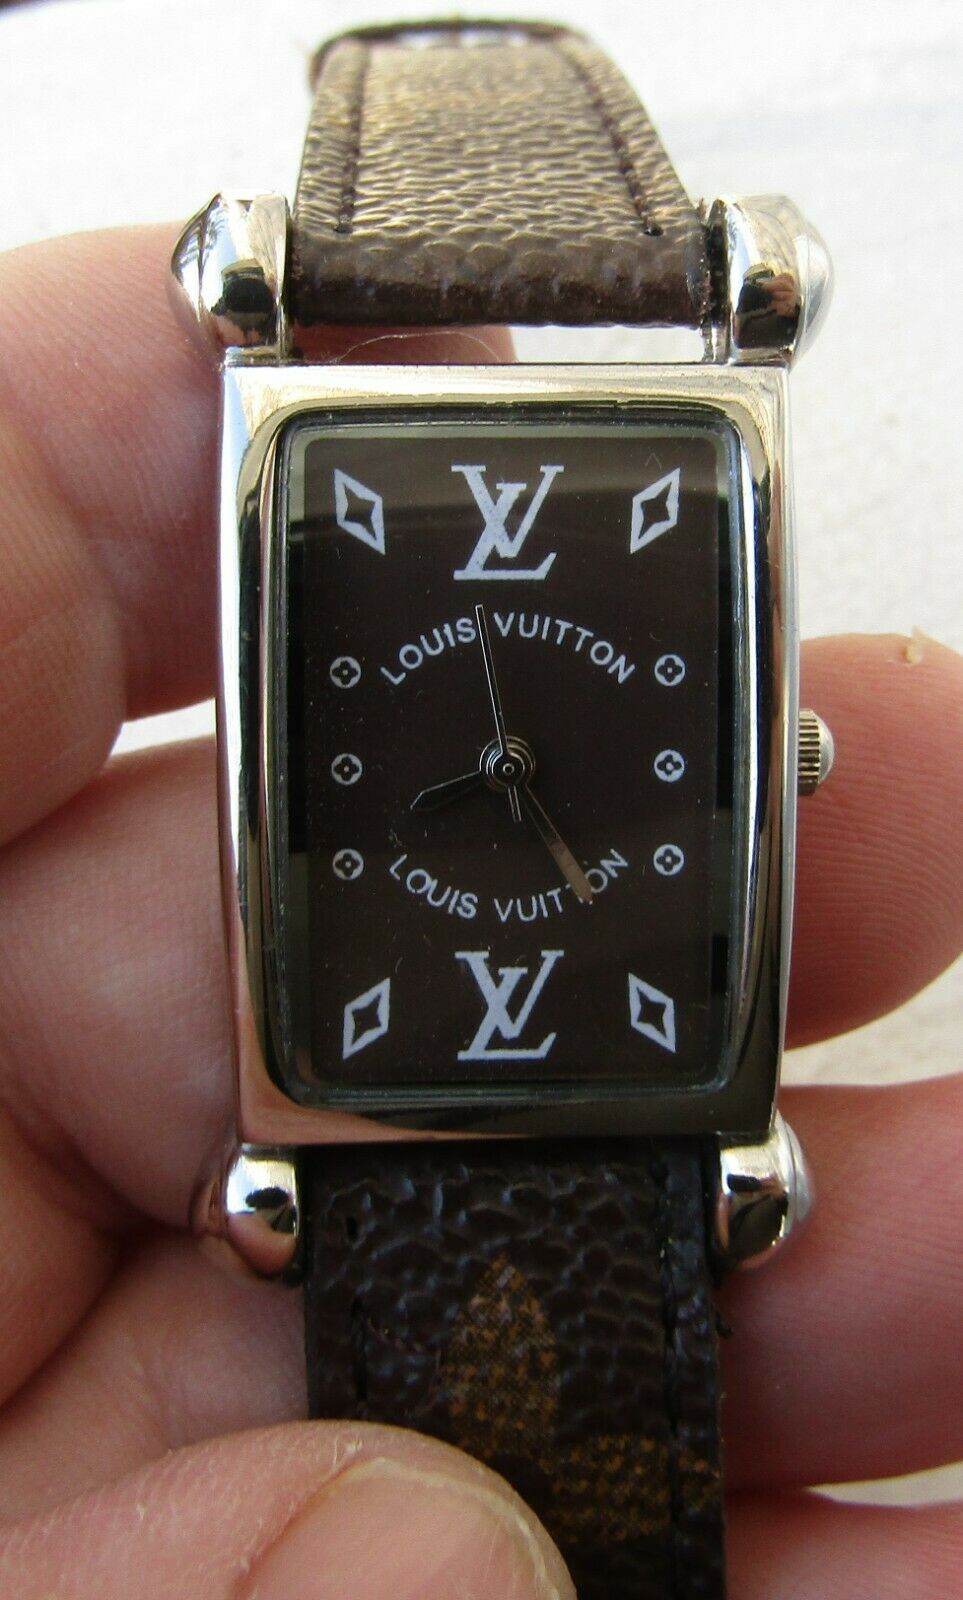 Vintage Louis Vuitton Paris Woman's Leather Watch New Battery 1187HS2003L